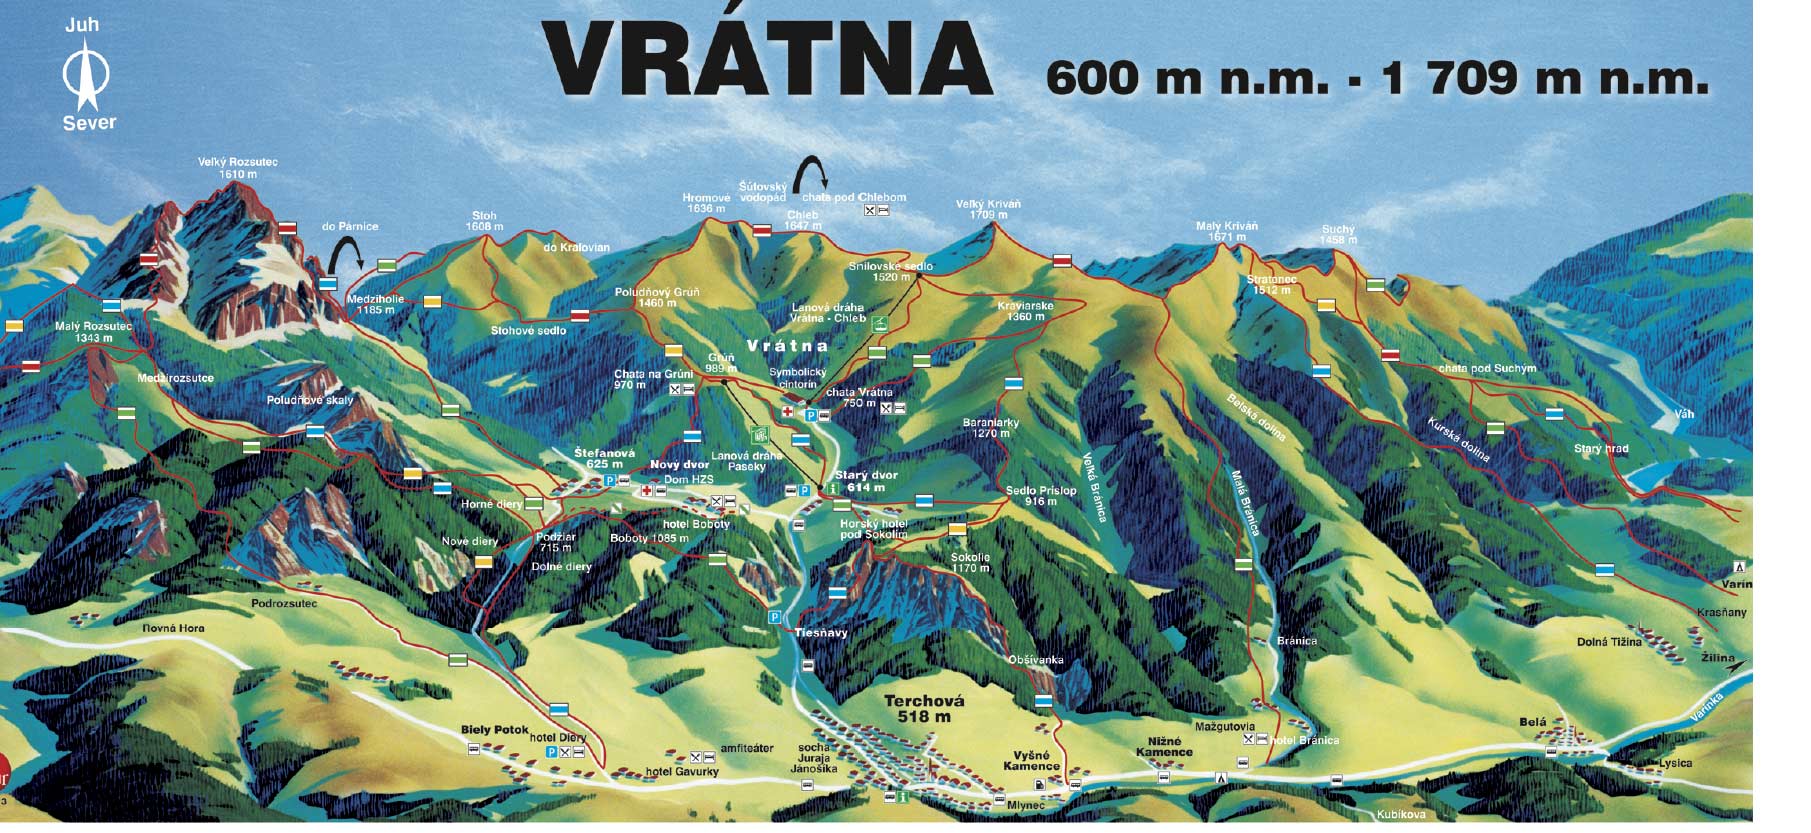 Vratna Dolina Valley and surrounding - cartoon map